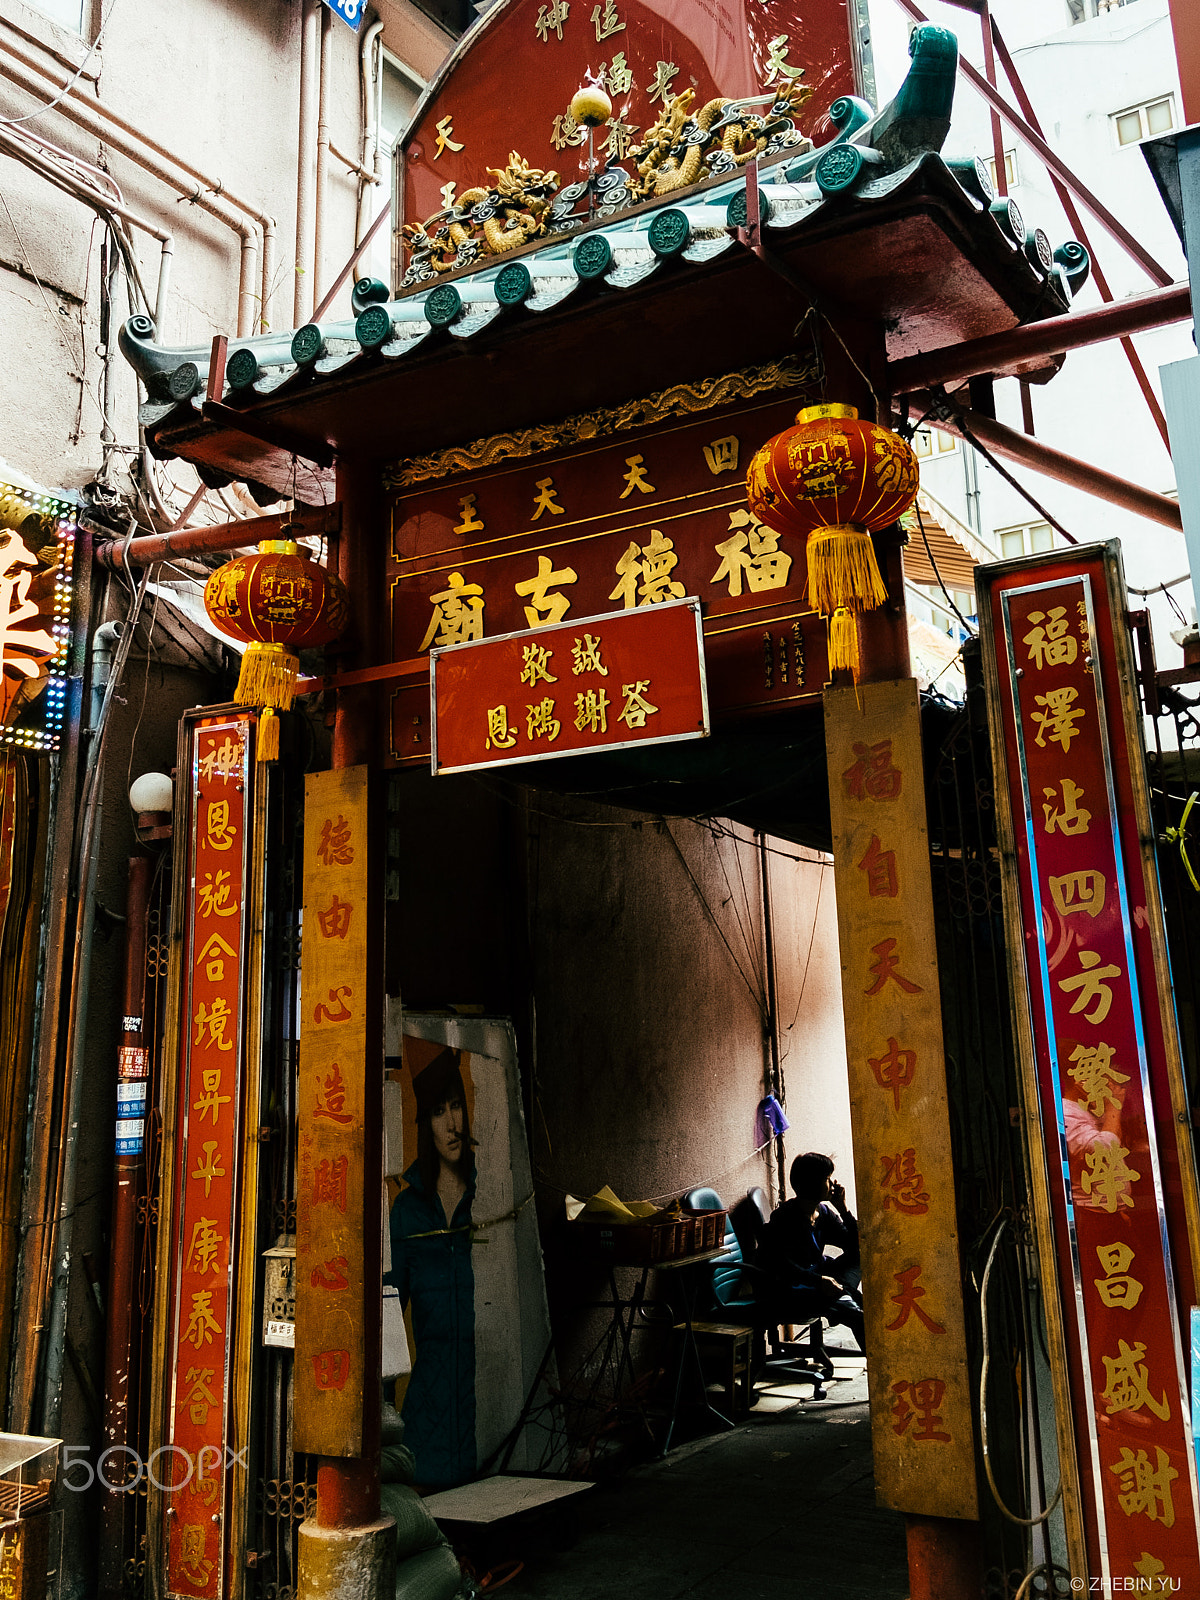 Fujifilm X-E2S sample photo. Small temple in hk photography